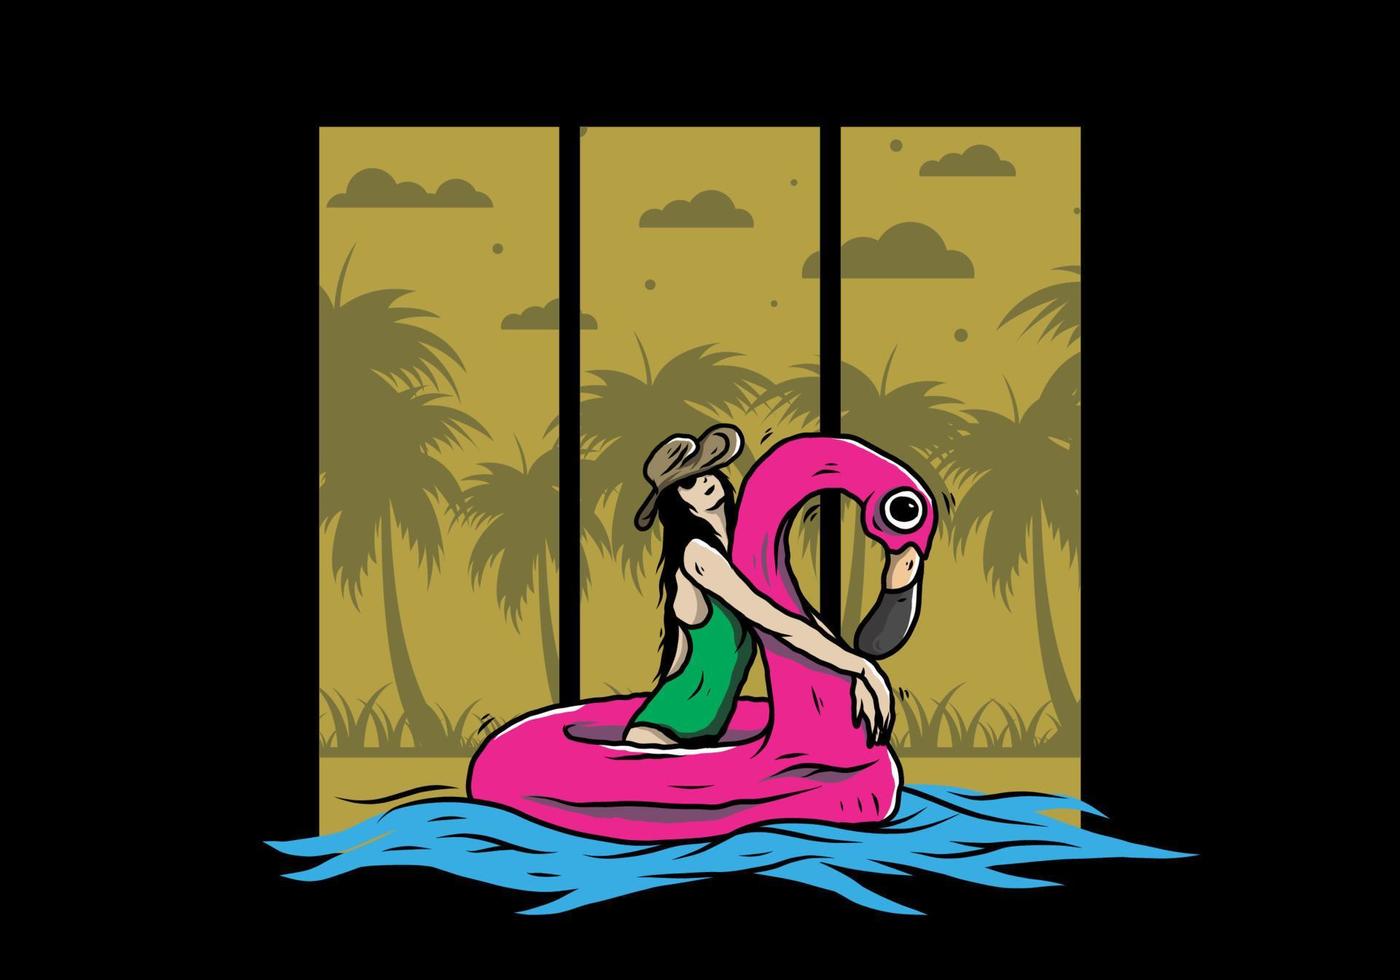 garota usando chapéu de praia em uma ilustração de flamingo de boia salva-vidas inflável vetor